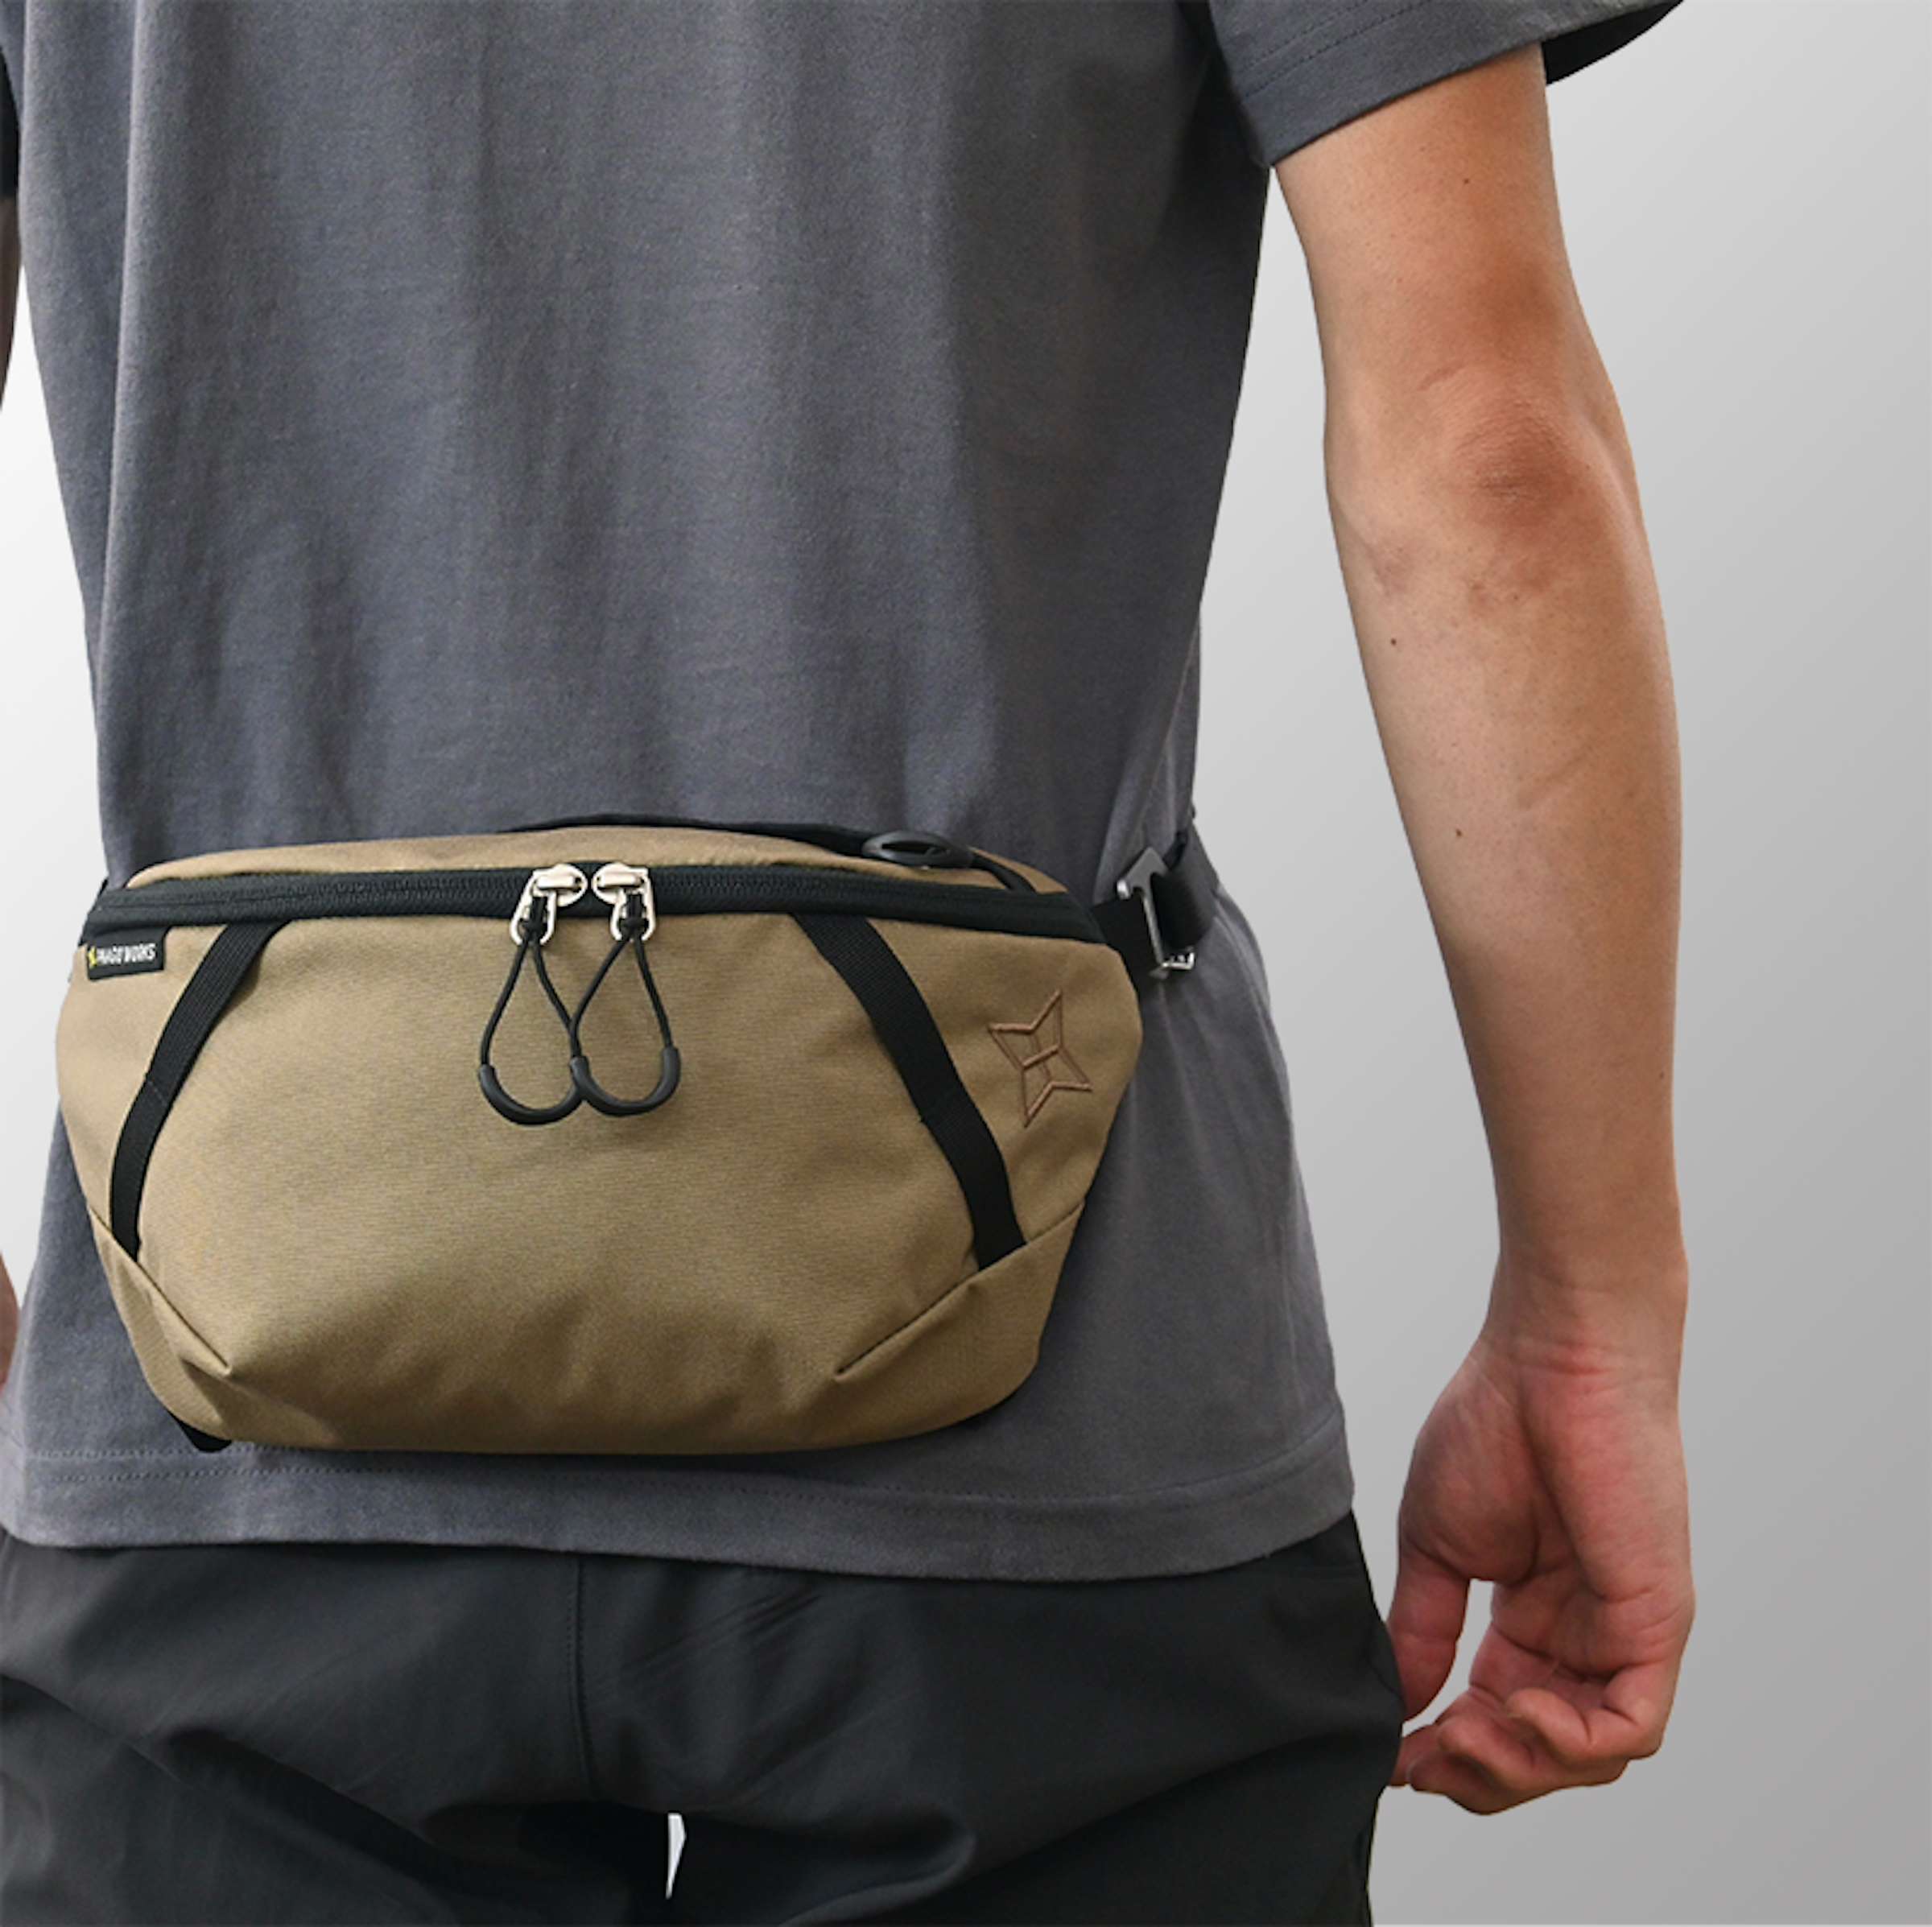 付属ベルトの長さを調節すればウエストバッグとして使用可能。やはり身体の側に重心がきて安定する